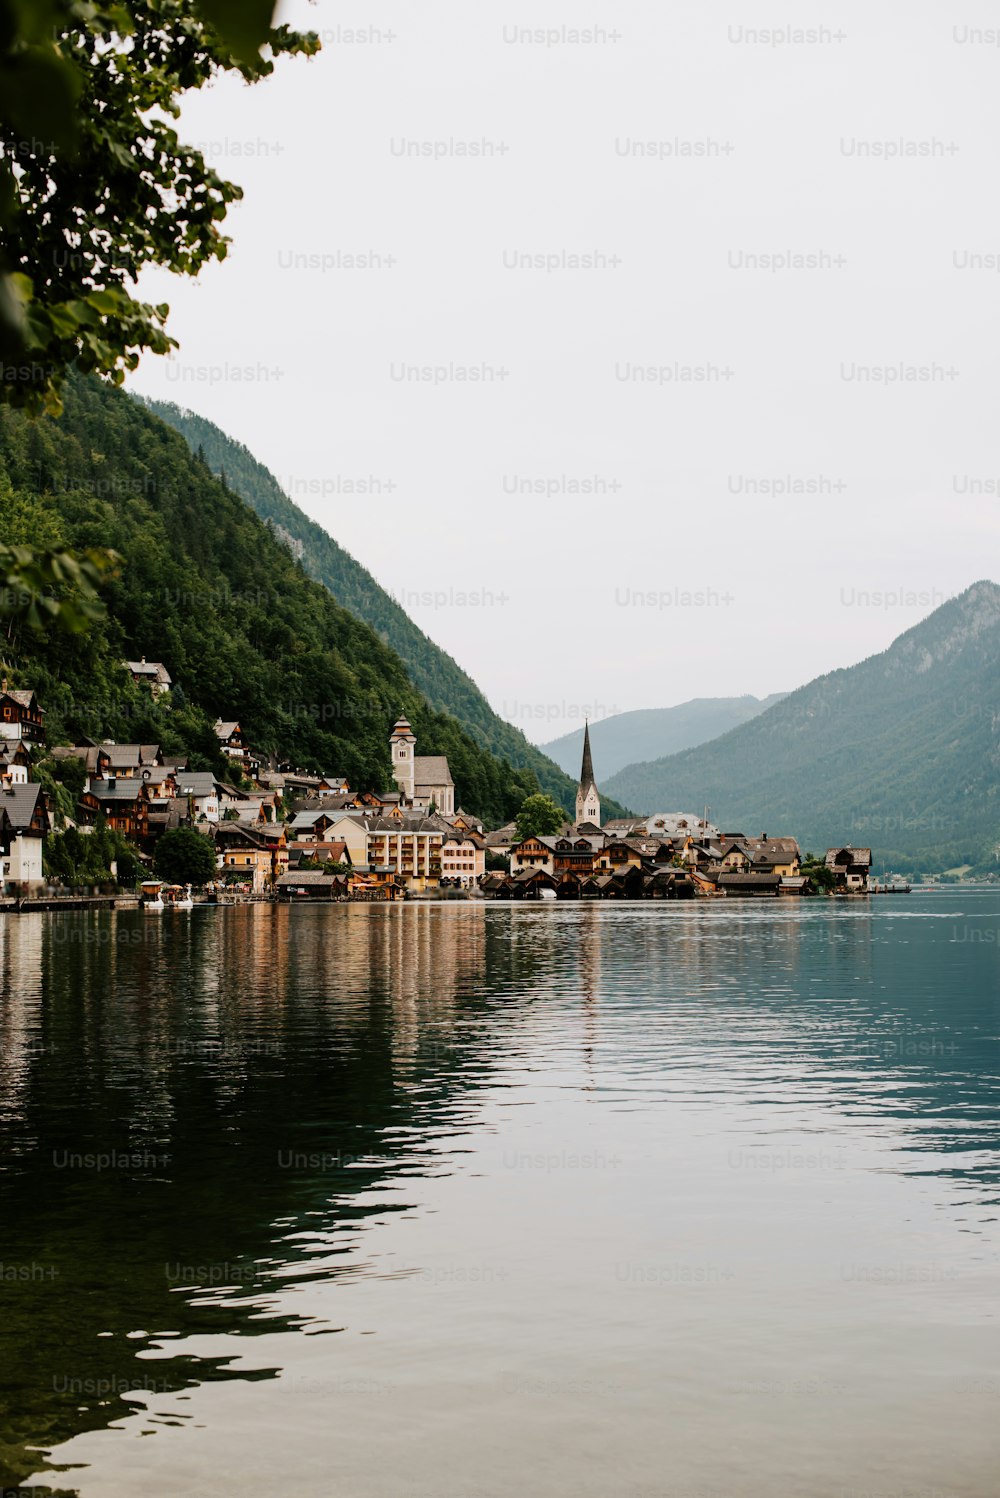 Un piccolo villaggio su un lago circondato da montagne